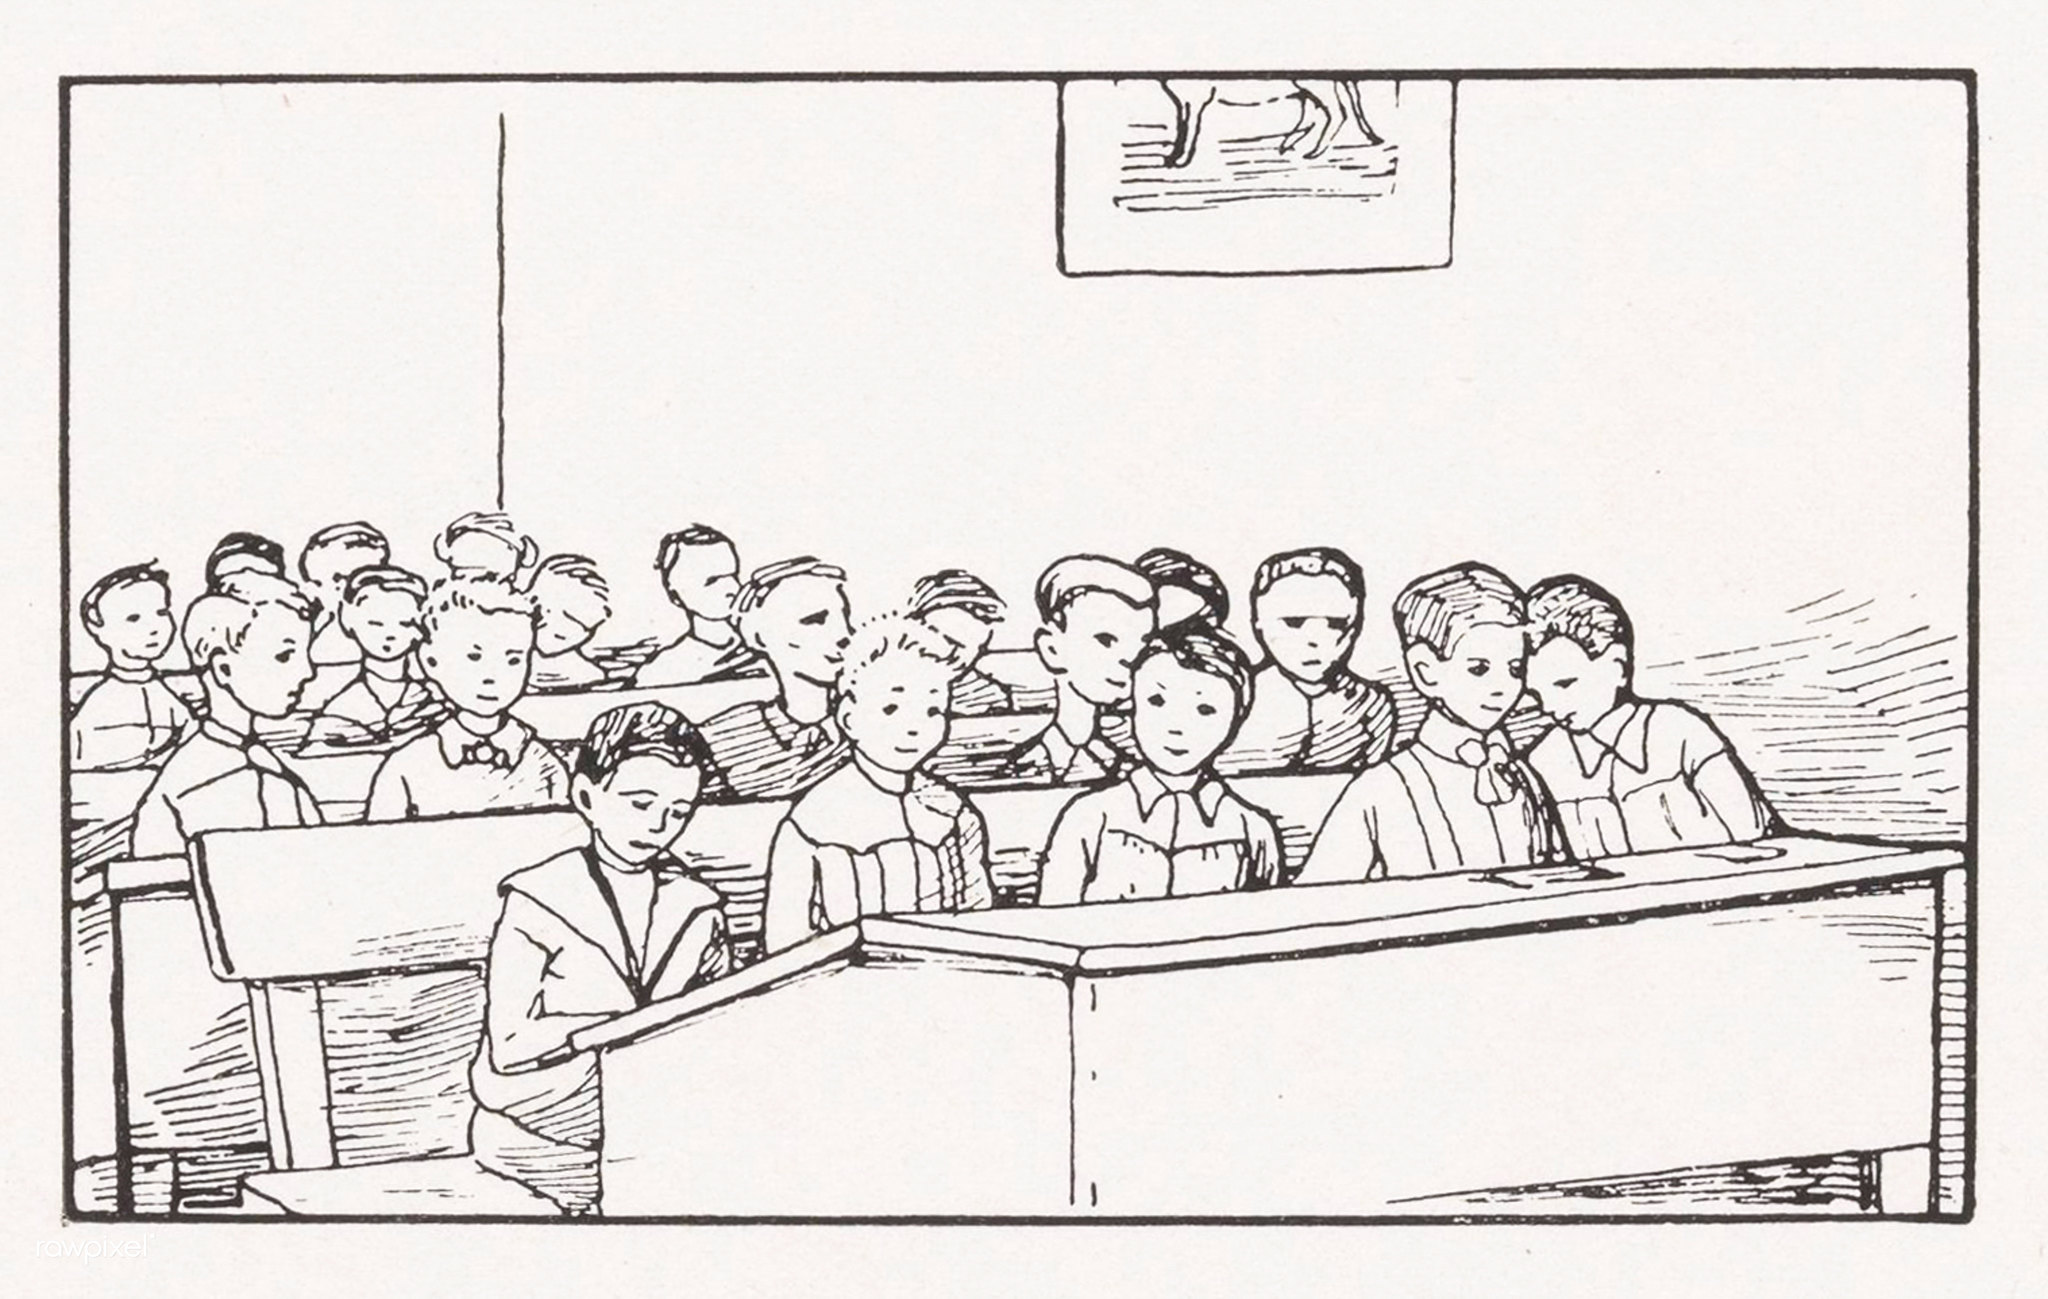 Humor z zeszytów szkolnych (nr 1167/1967 r.)